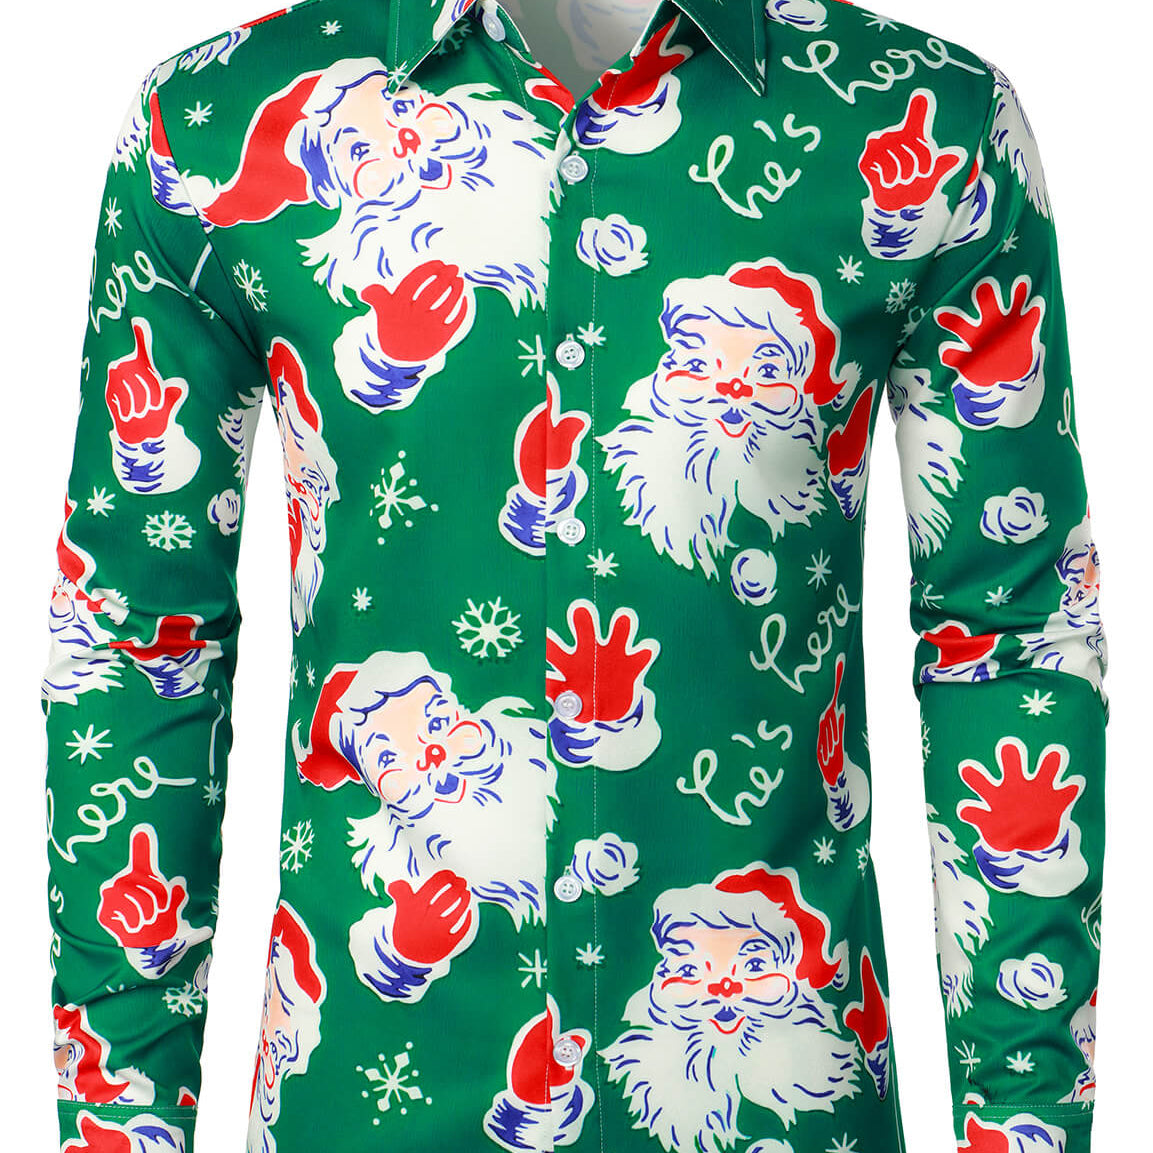 Camisa de manga larga verde con botones navideños y copos de nieve de Papá Noel con temática navideña para hombre